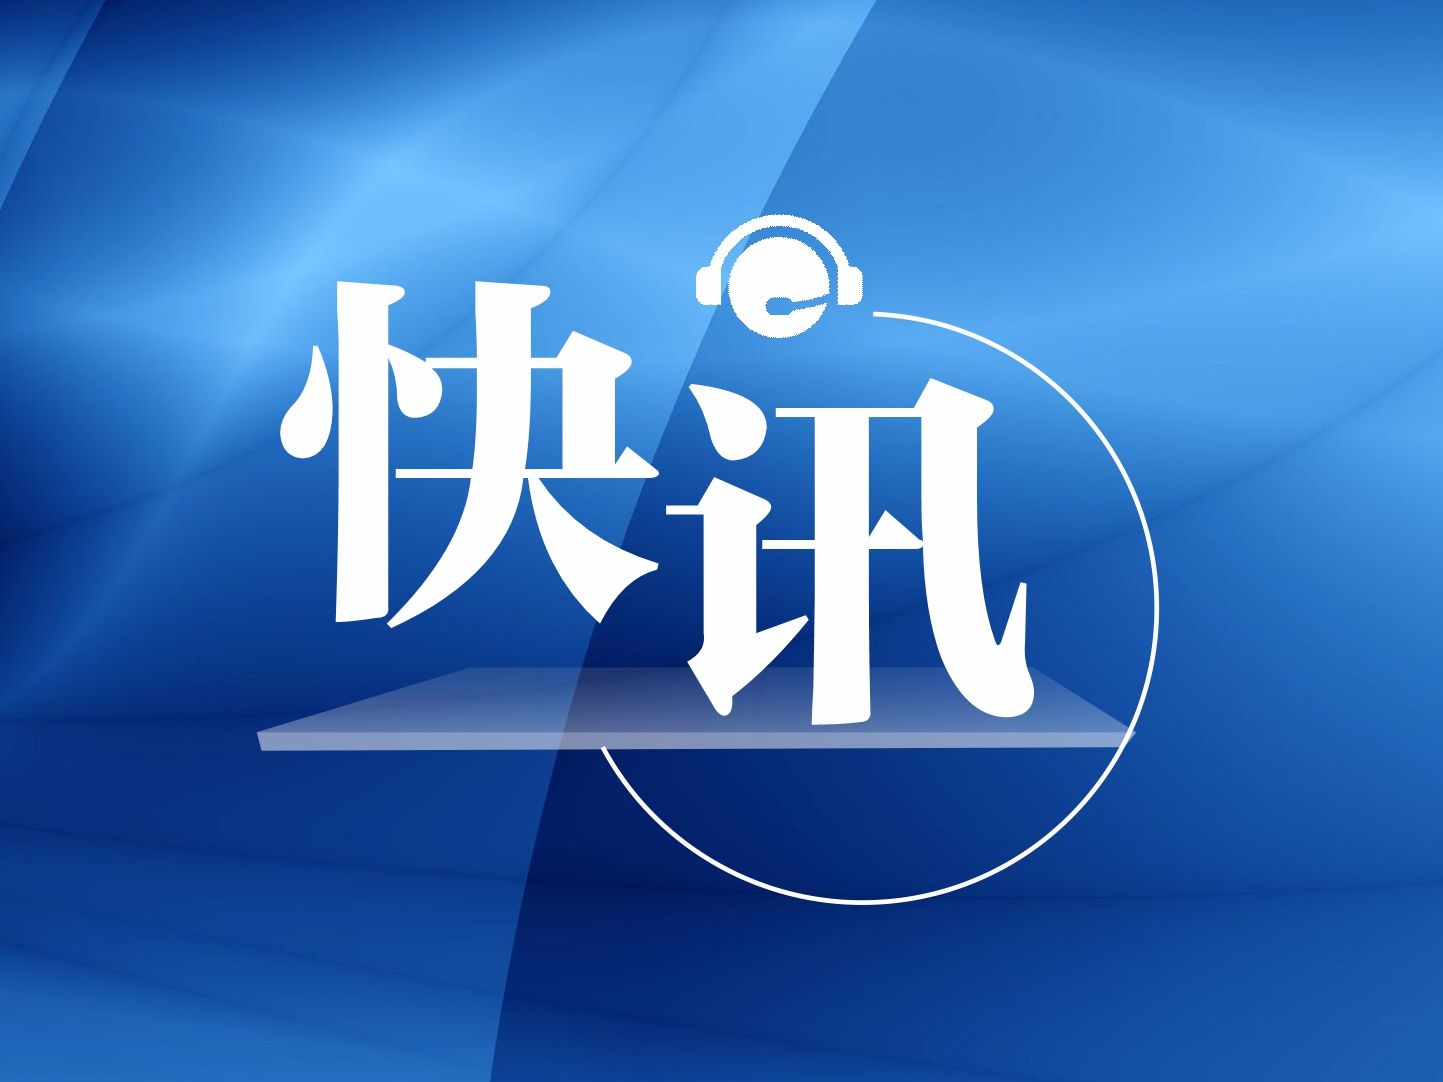 郑州市纪委监委启动对赋红码问题调查问责程序